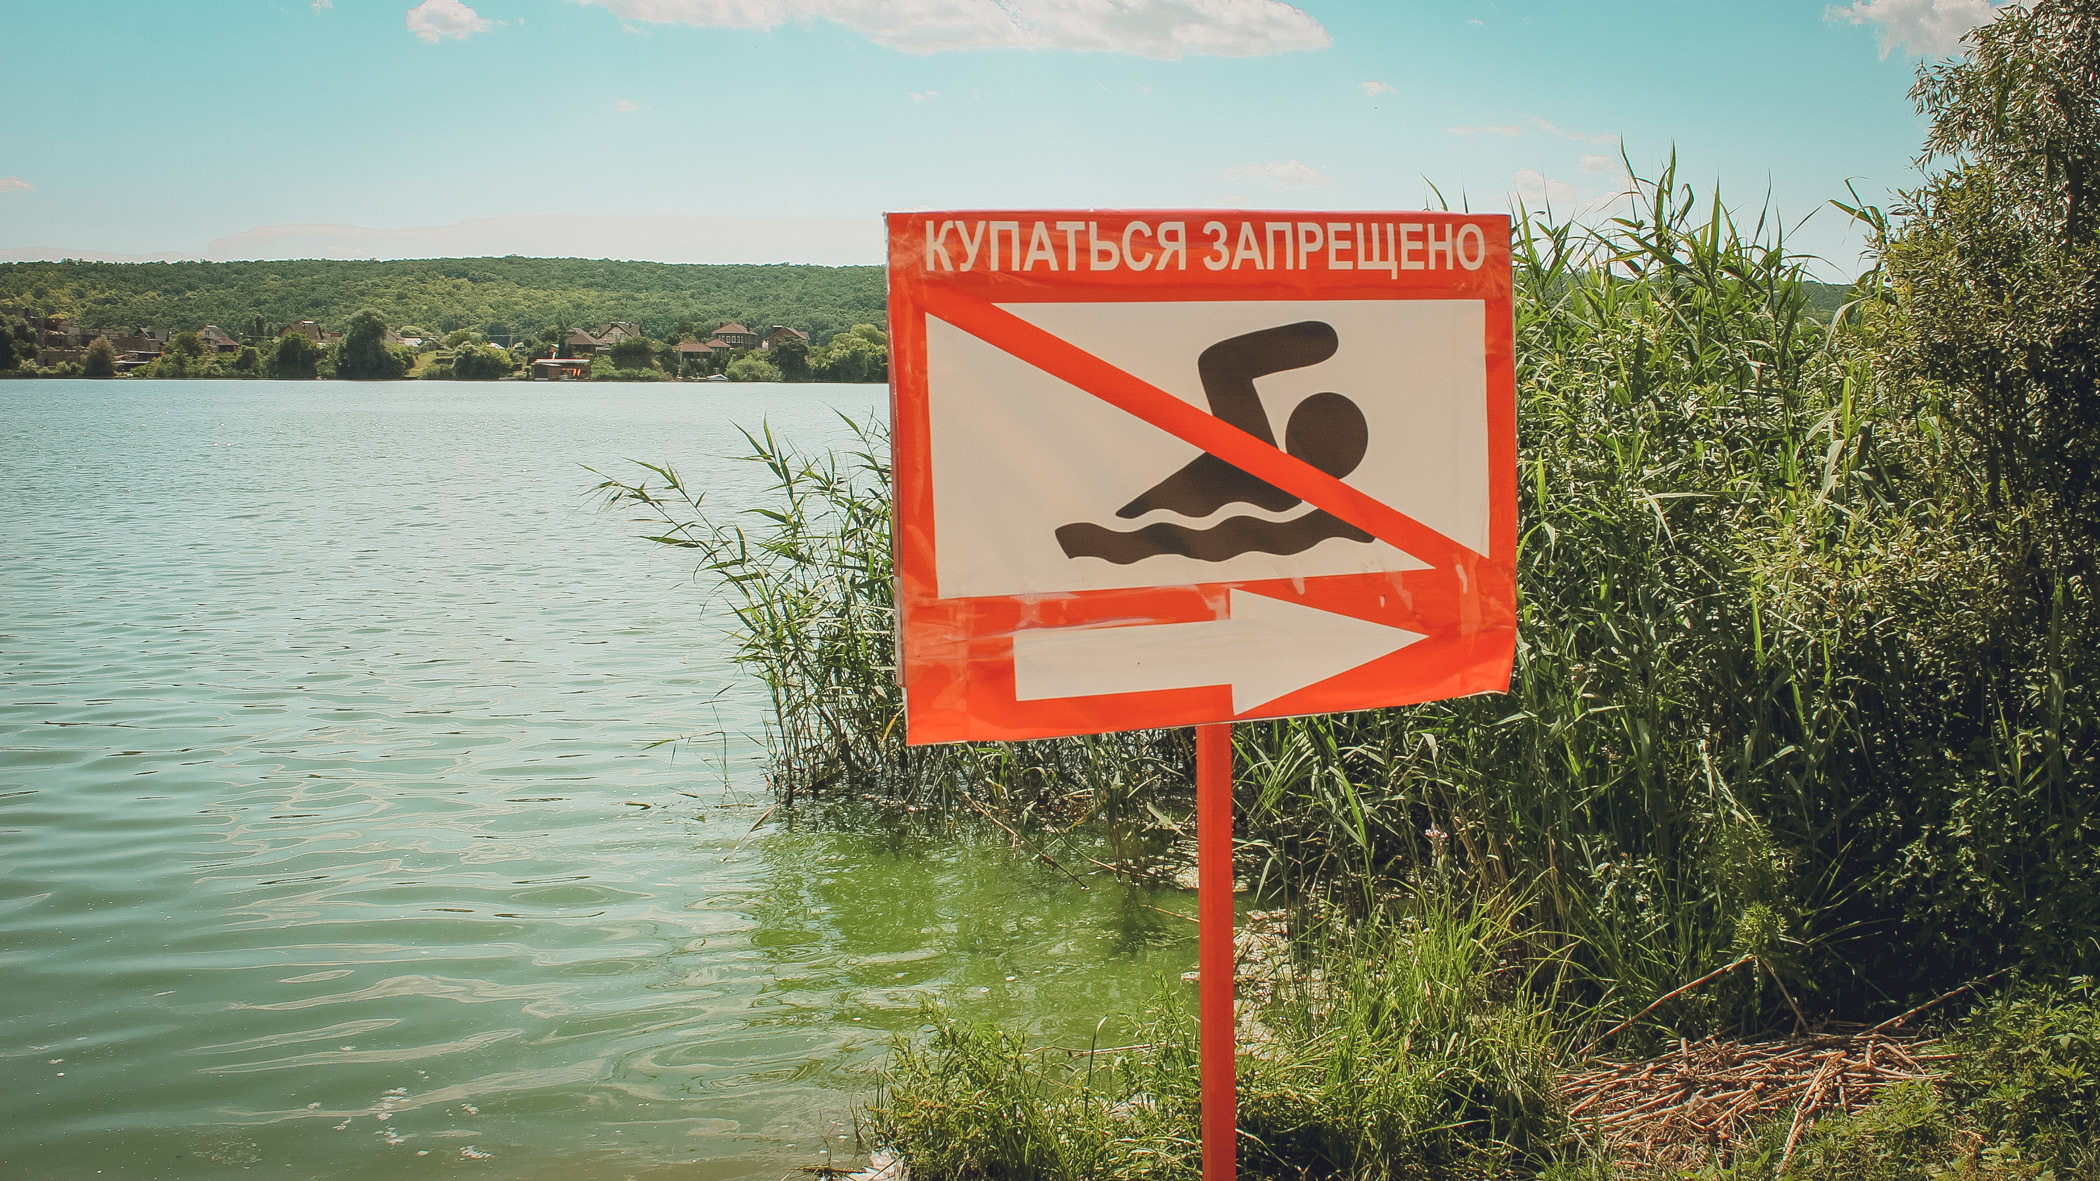 Нырнул и больше не вынырнул: 17-летний подросток утонул на диком пляже в Новосибирске